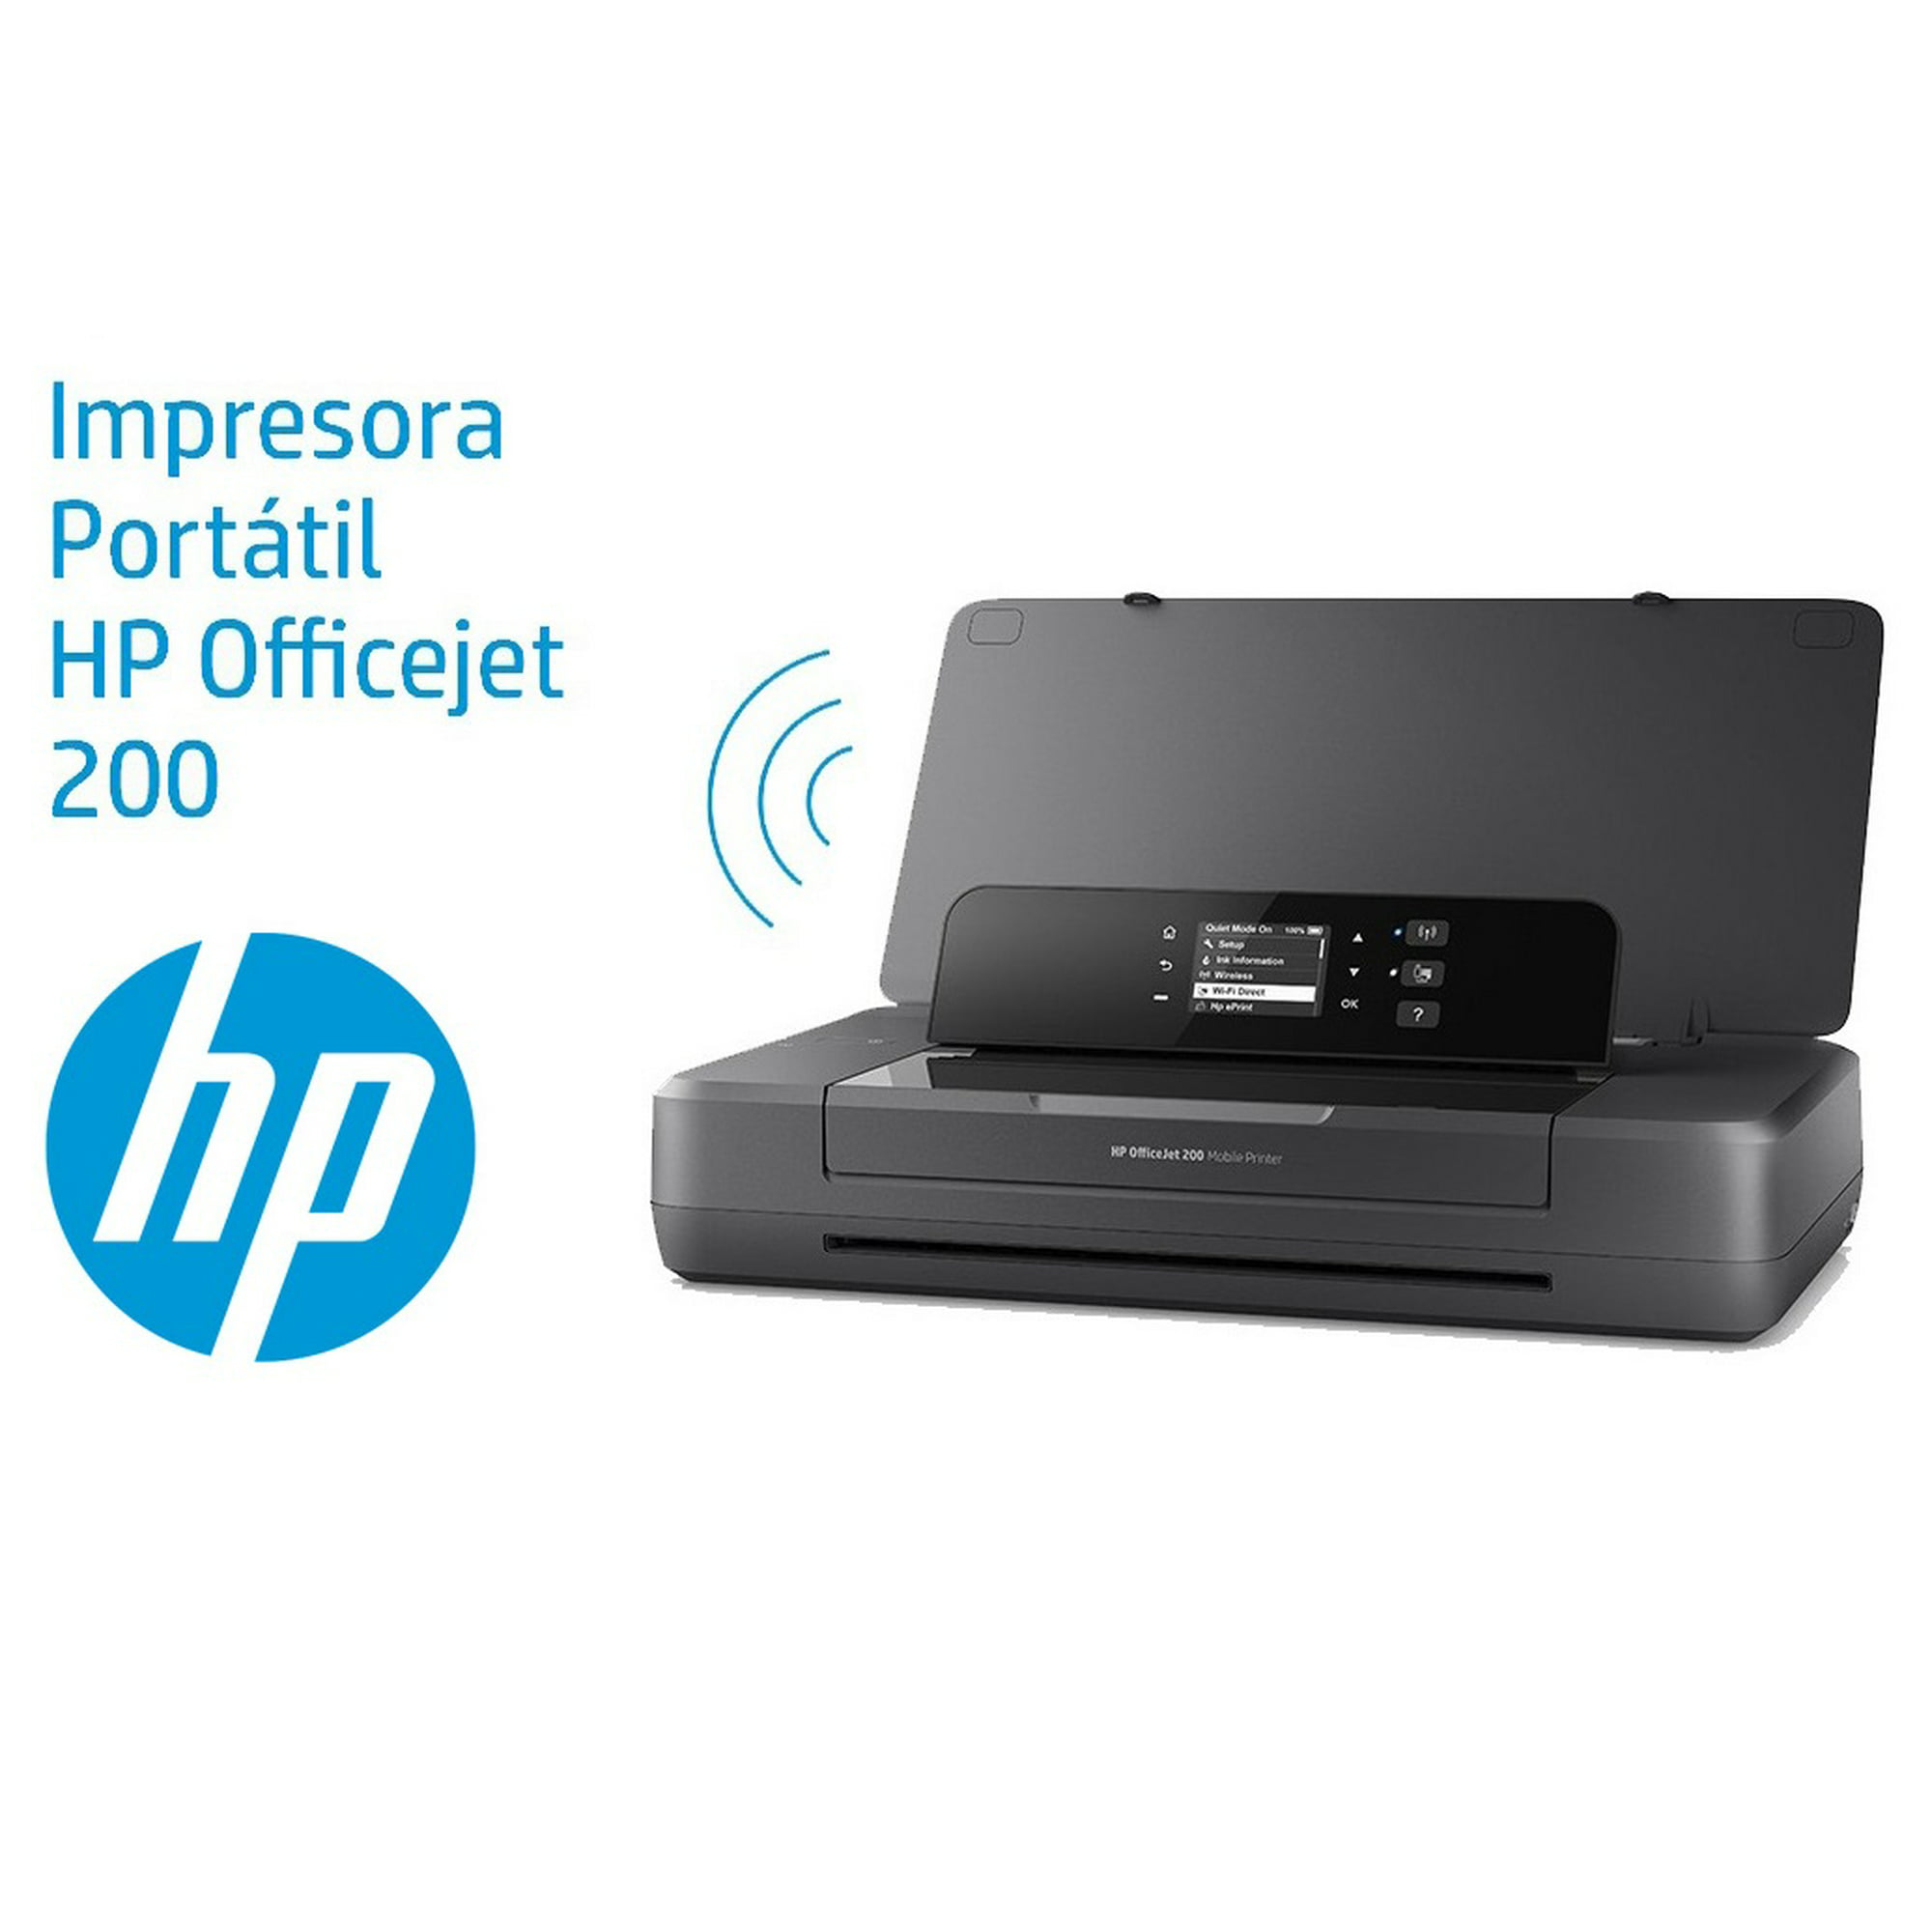 Impresora Portátil HP OfficeJet 200 Mobile